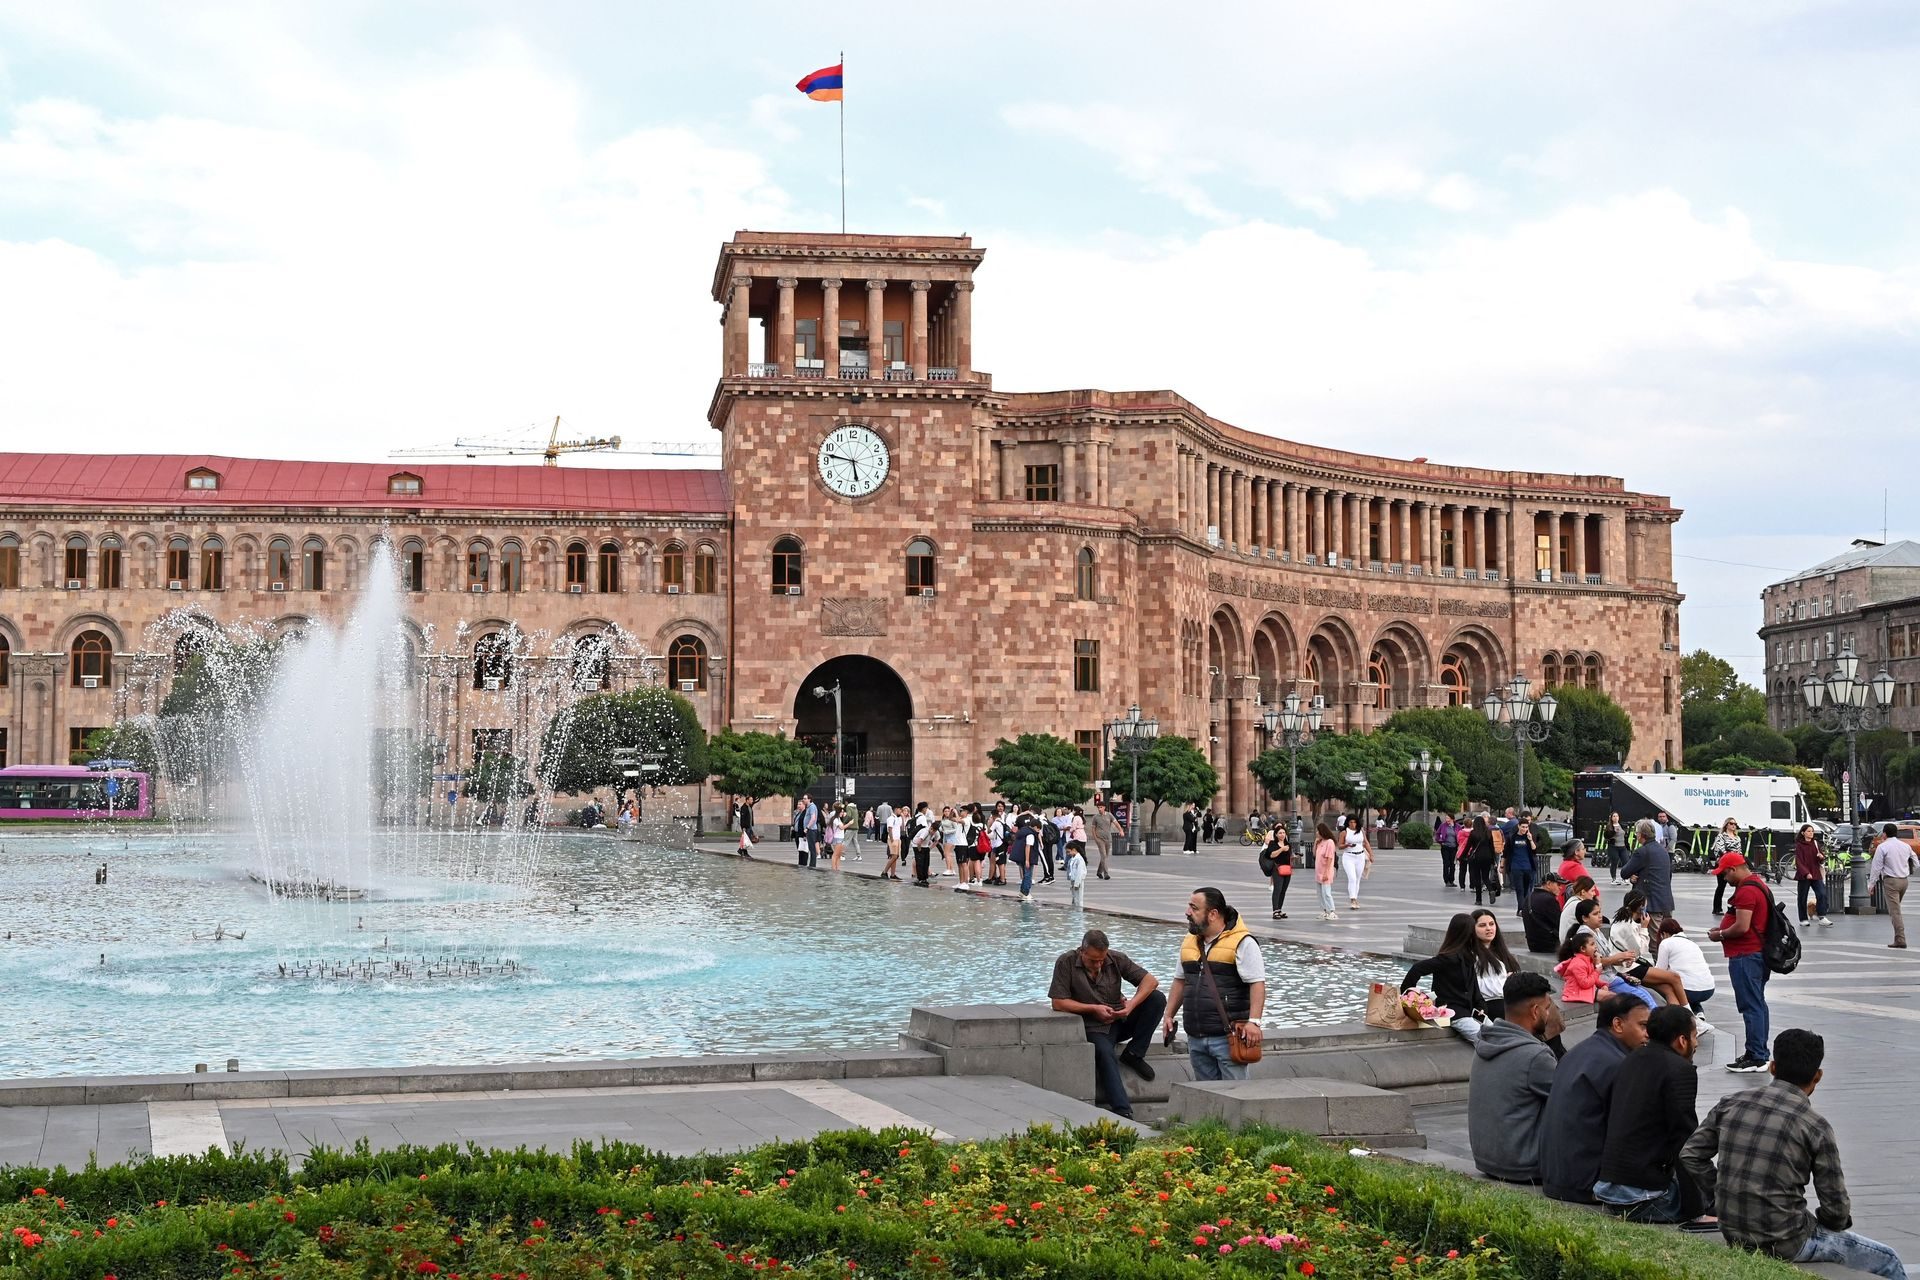 Et condamnée par Erevan